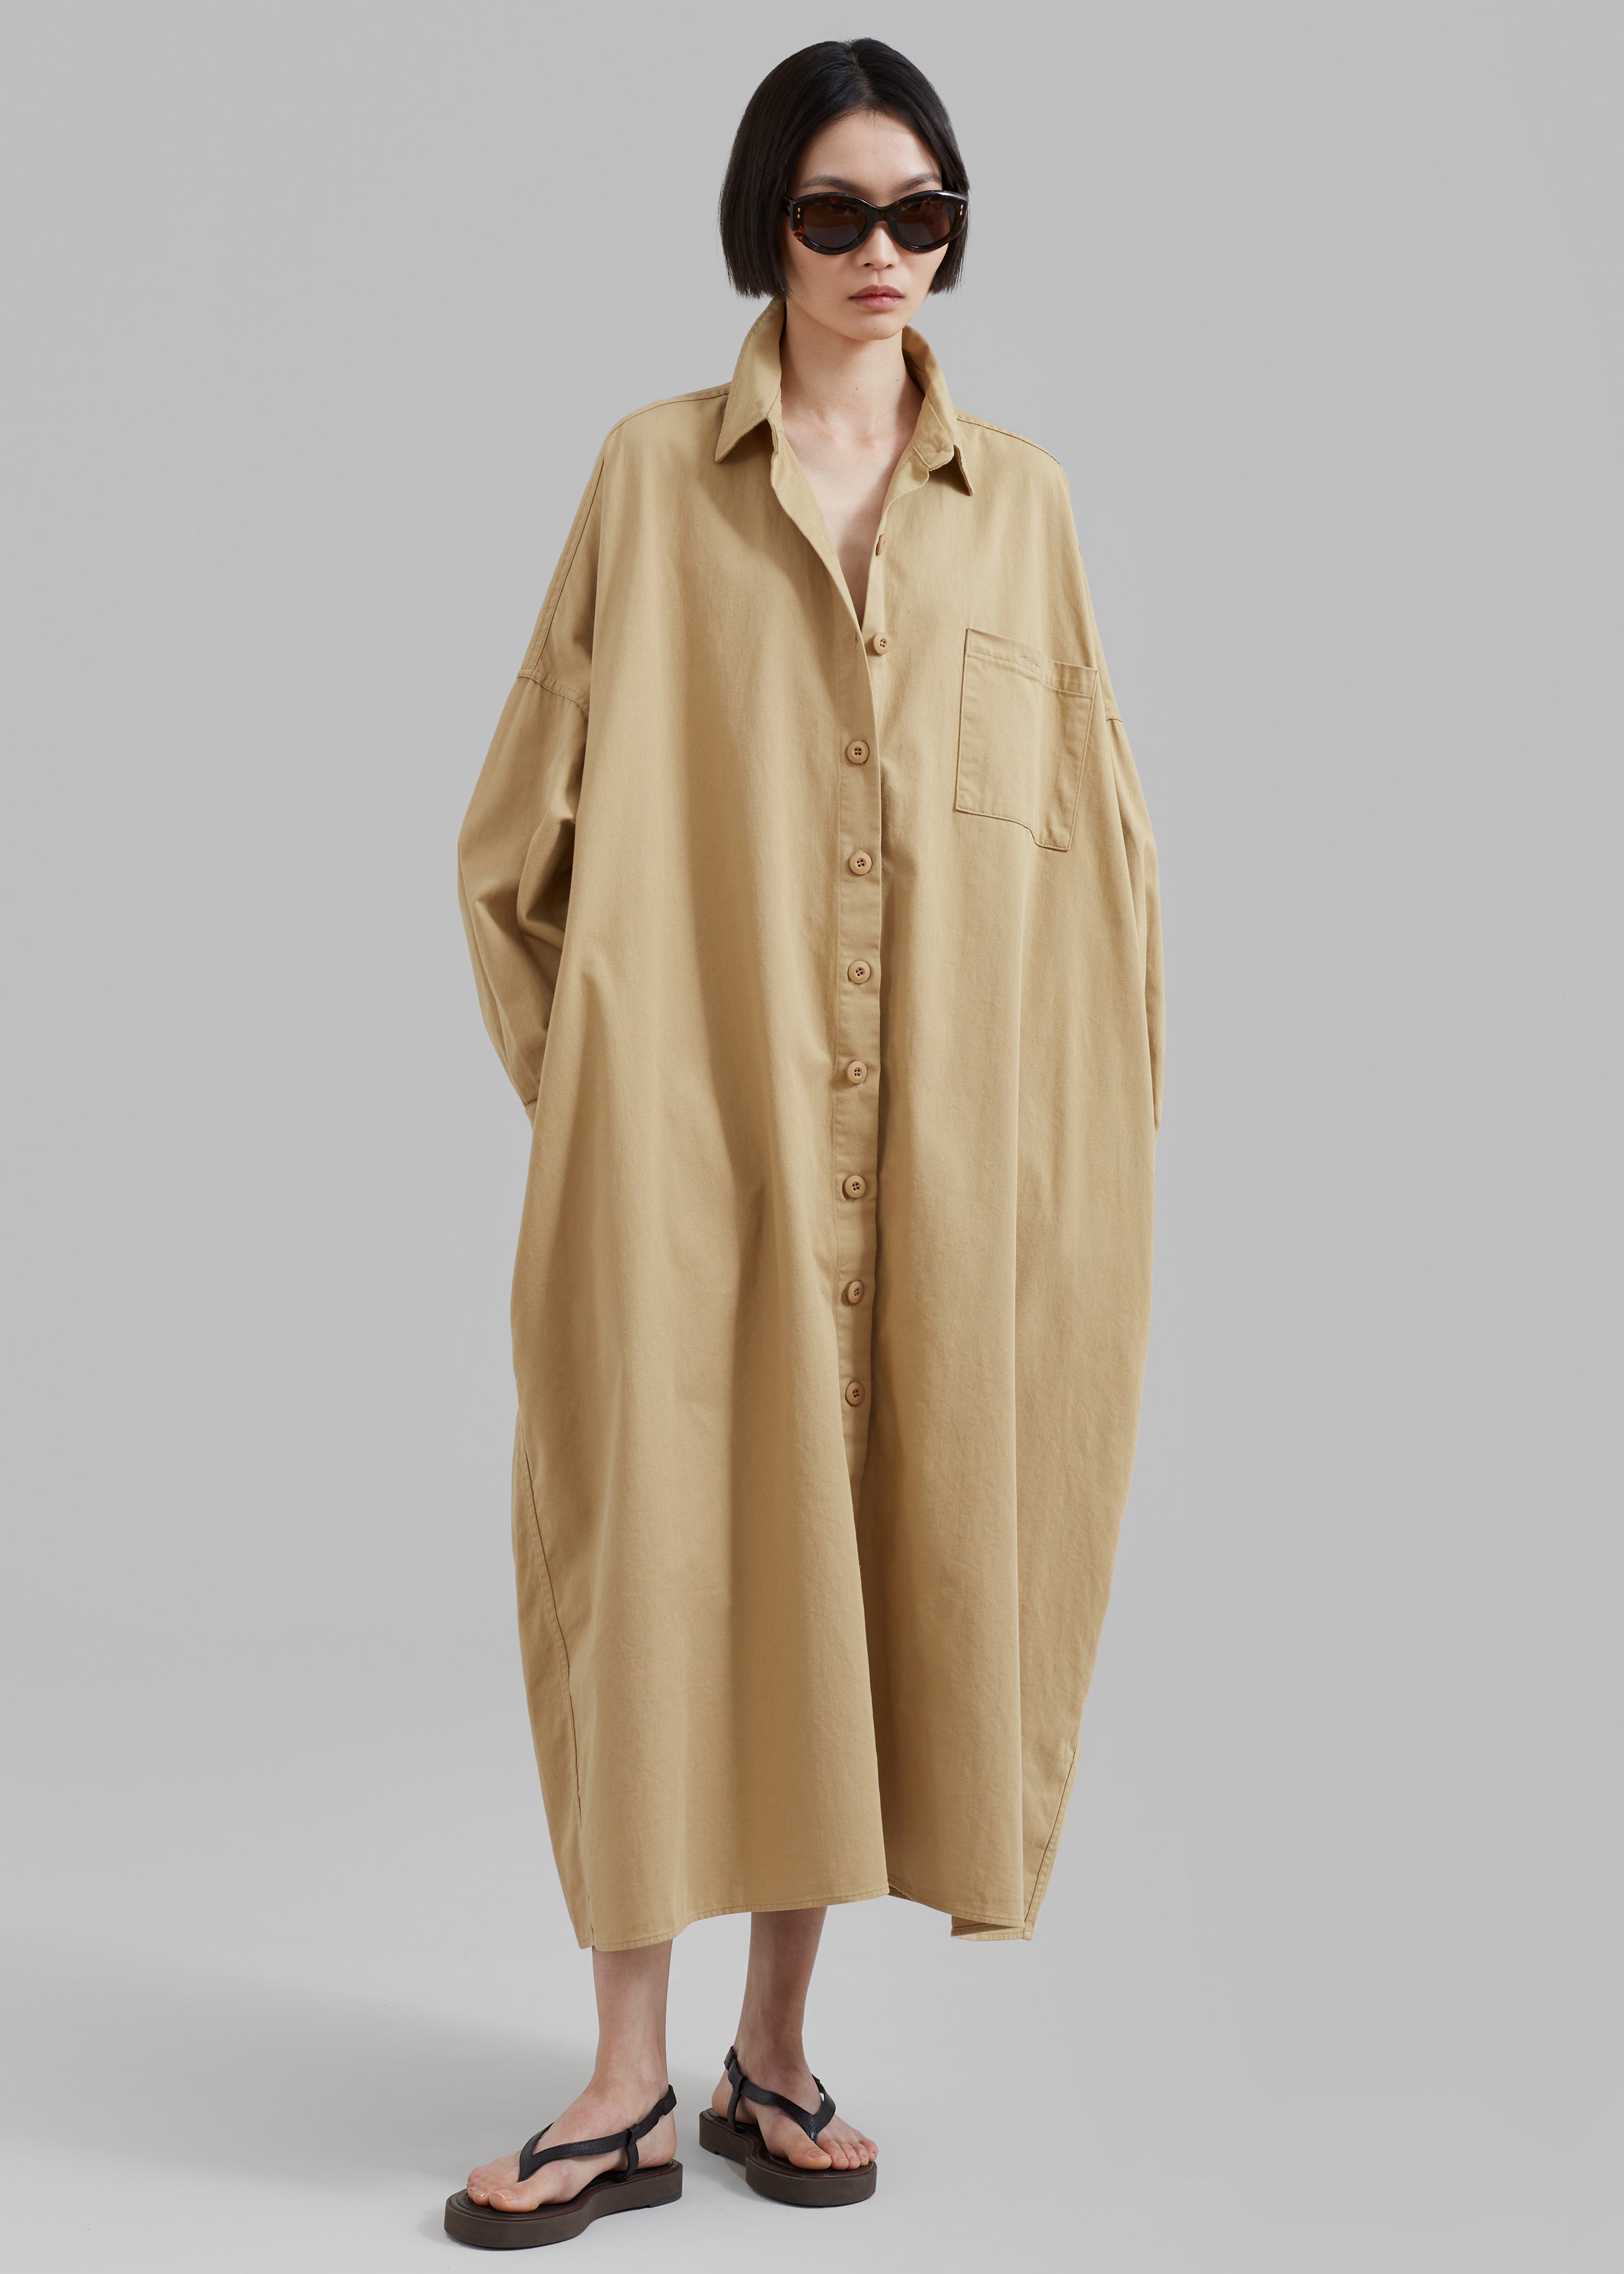 Kason Oversized Shirt Dress - Sahara - 3